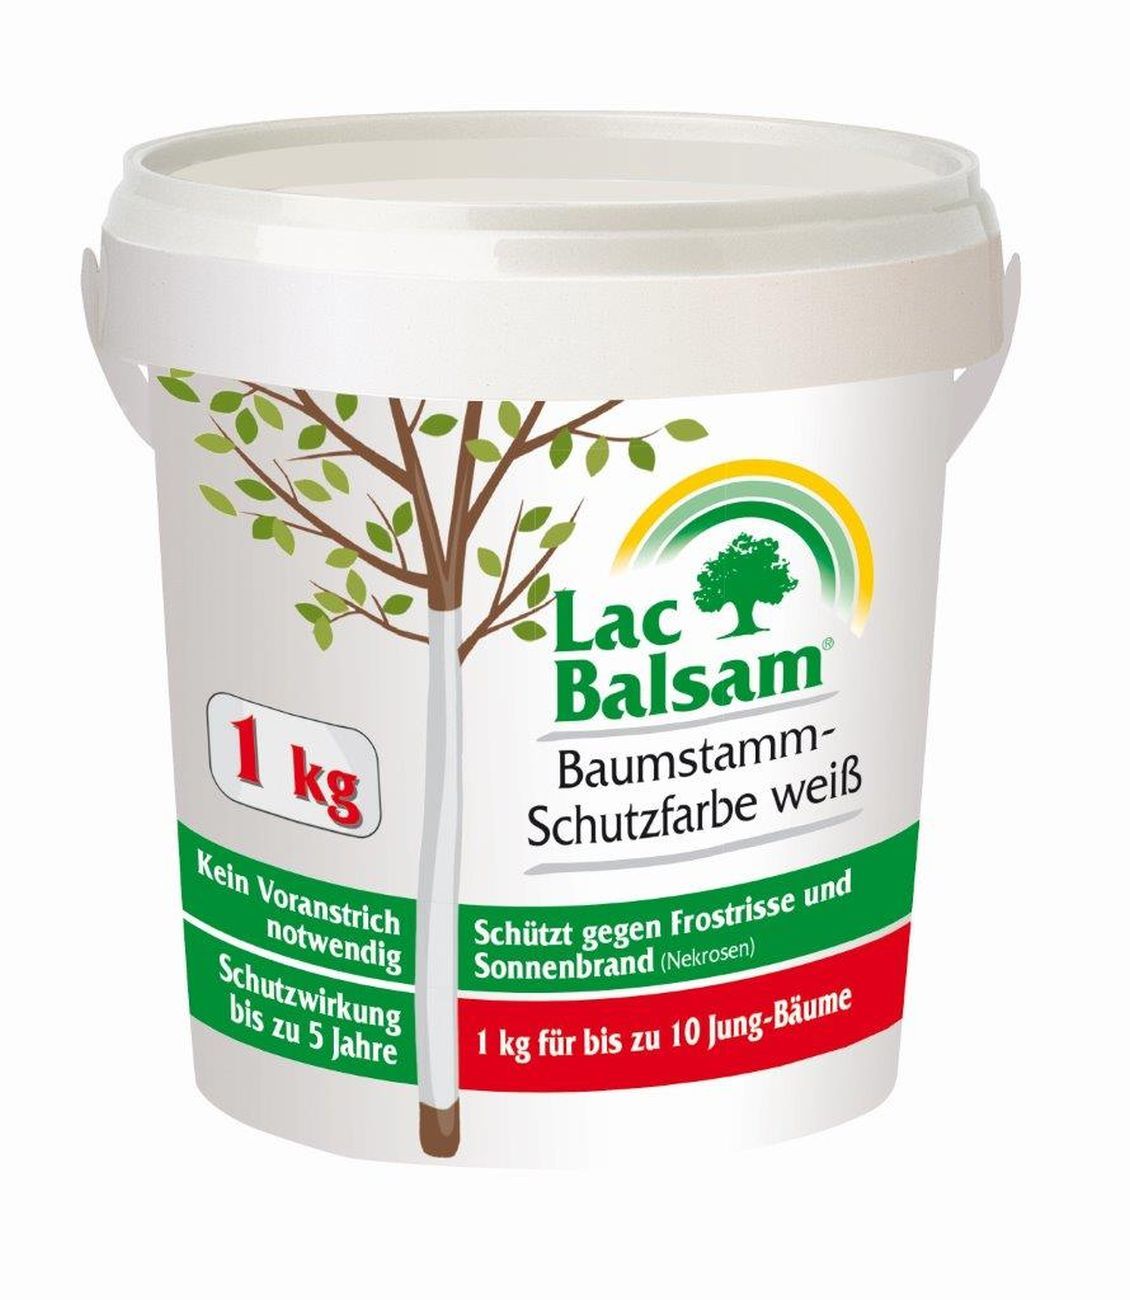 Etisso LacBalsam Baumstamm-Schutzfarbe weiß  1 kg